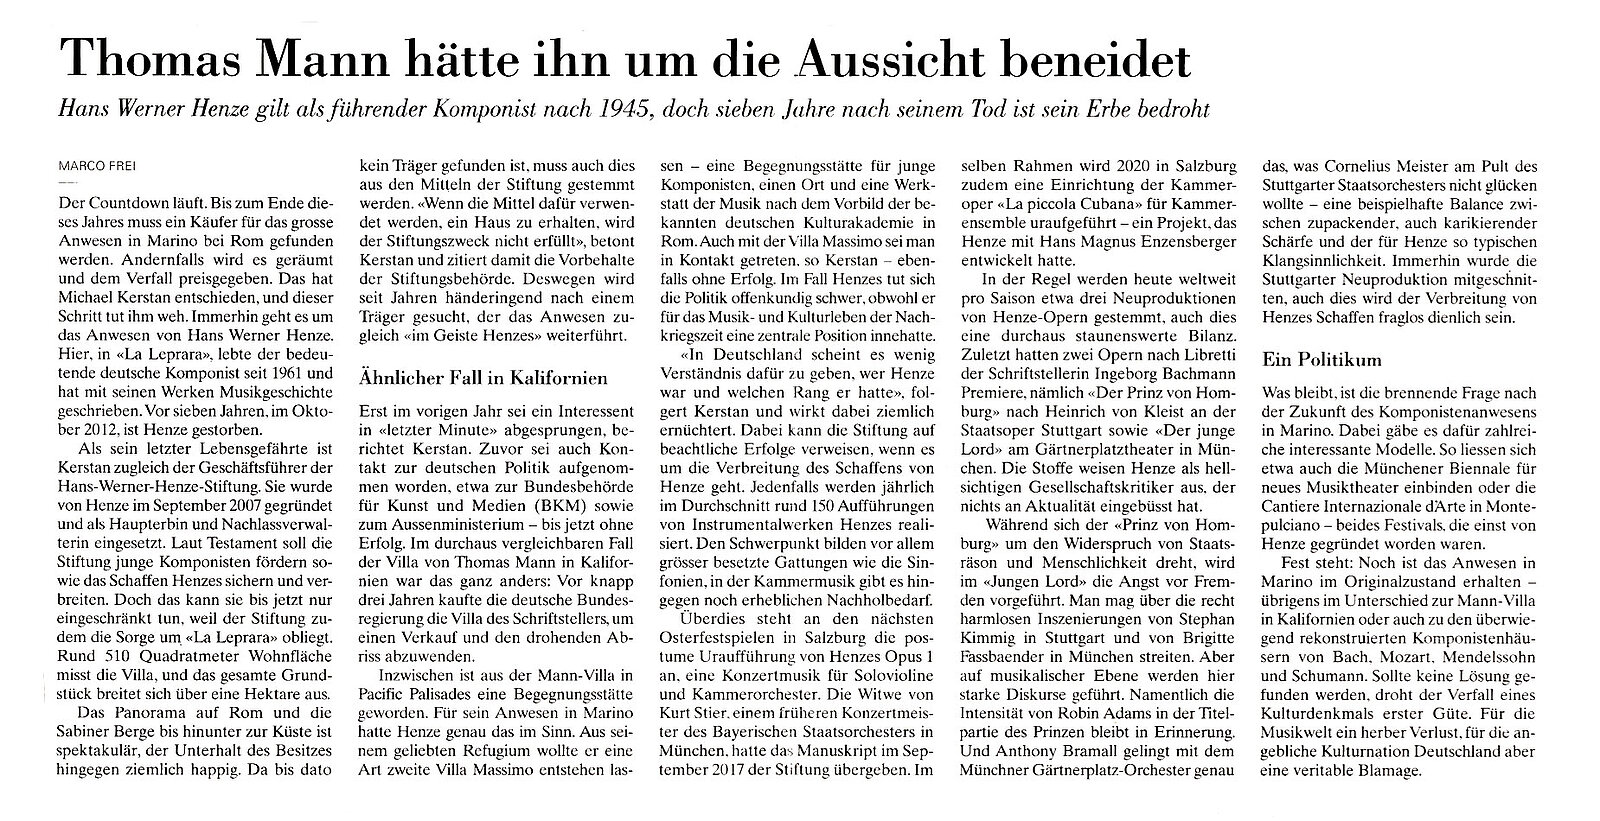 Artikel in der Neuen Züricher Zeitung vom 02.07.2019, von Ma...